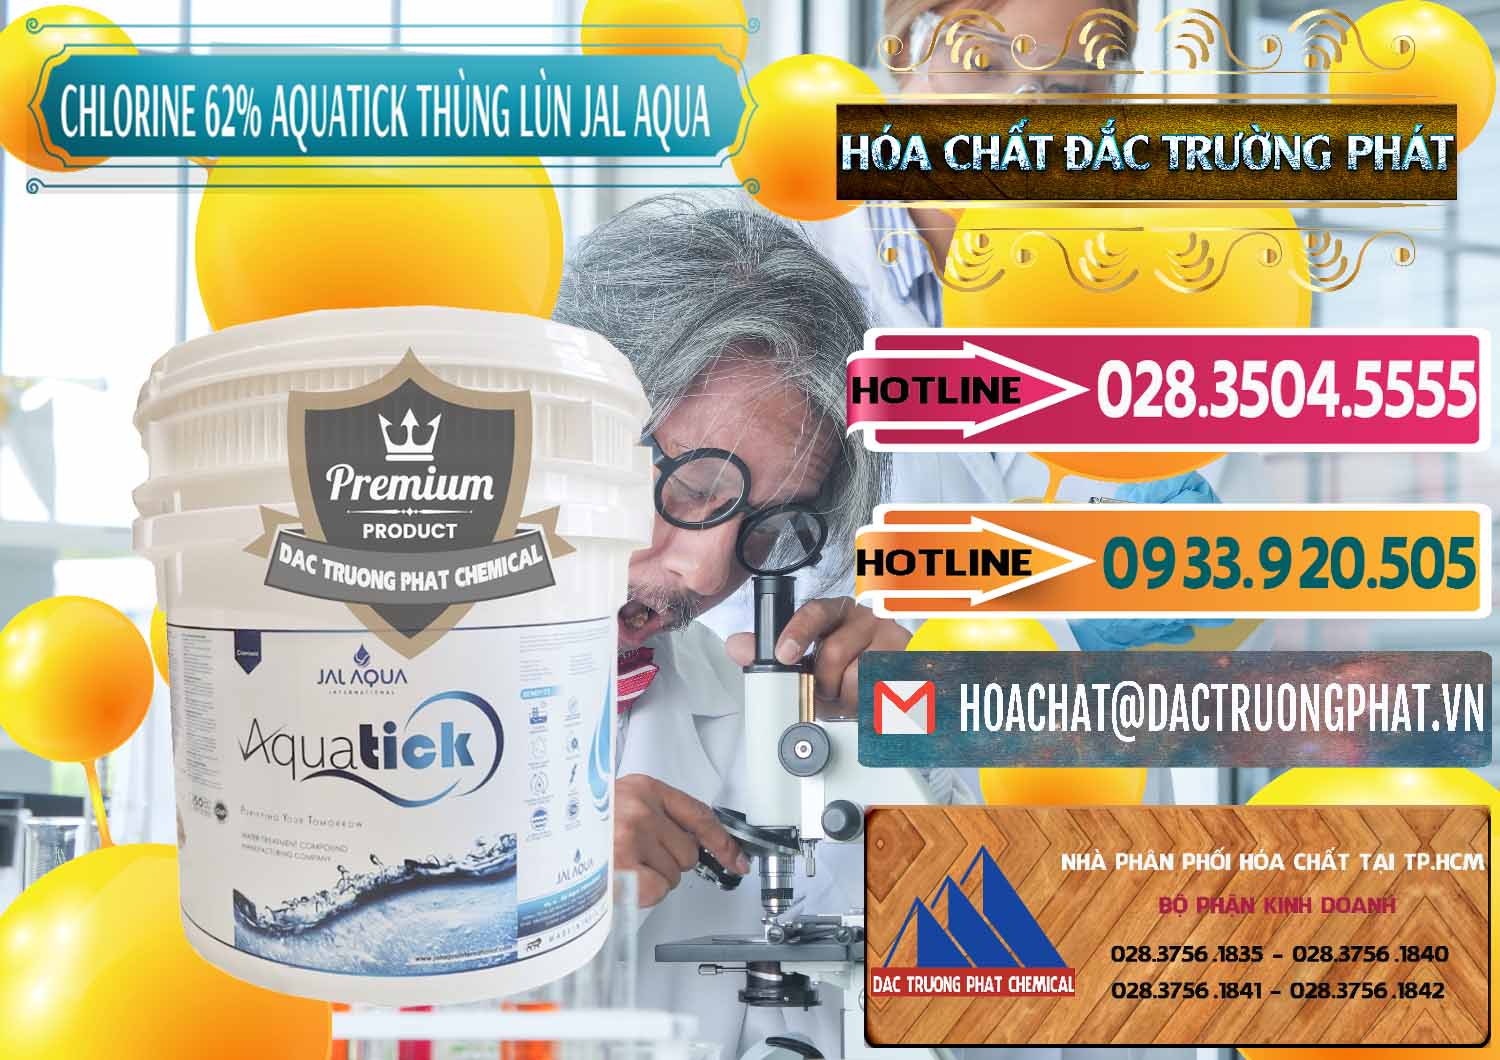 Công ty chuyên nhập khẩu và bán Chlorine – Clorin 62% Aquatick Thùng Lùn Jal Aqua Ấn Độ India - 0238 - Cty chuyên phân phối - nhập khẩu hóa chất tại TP.HCM - dactruongphat.vn